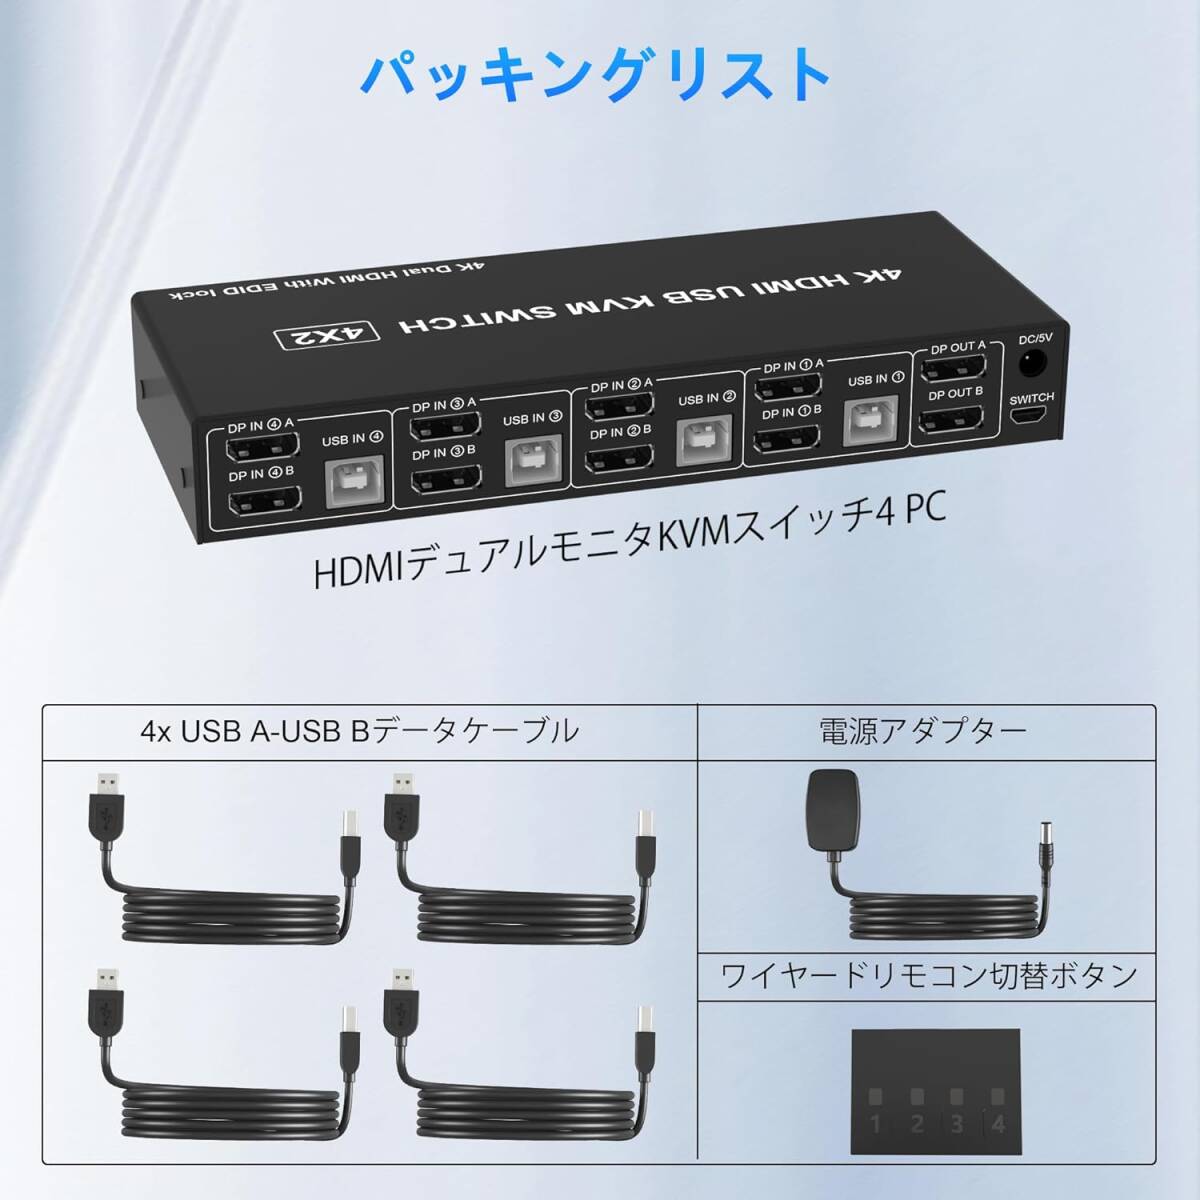 4 ポートUSB HDMI デュアル モニター KVMスイッチ 4K ディスプレイ切替器 2HDMIモニター 4PC 分配器_画像3